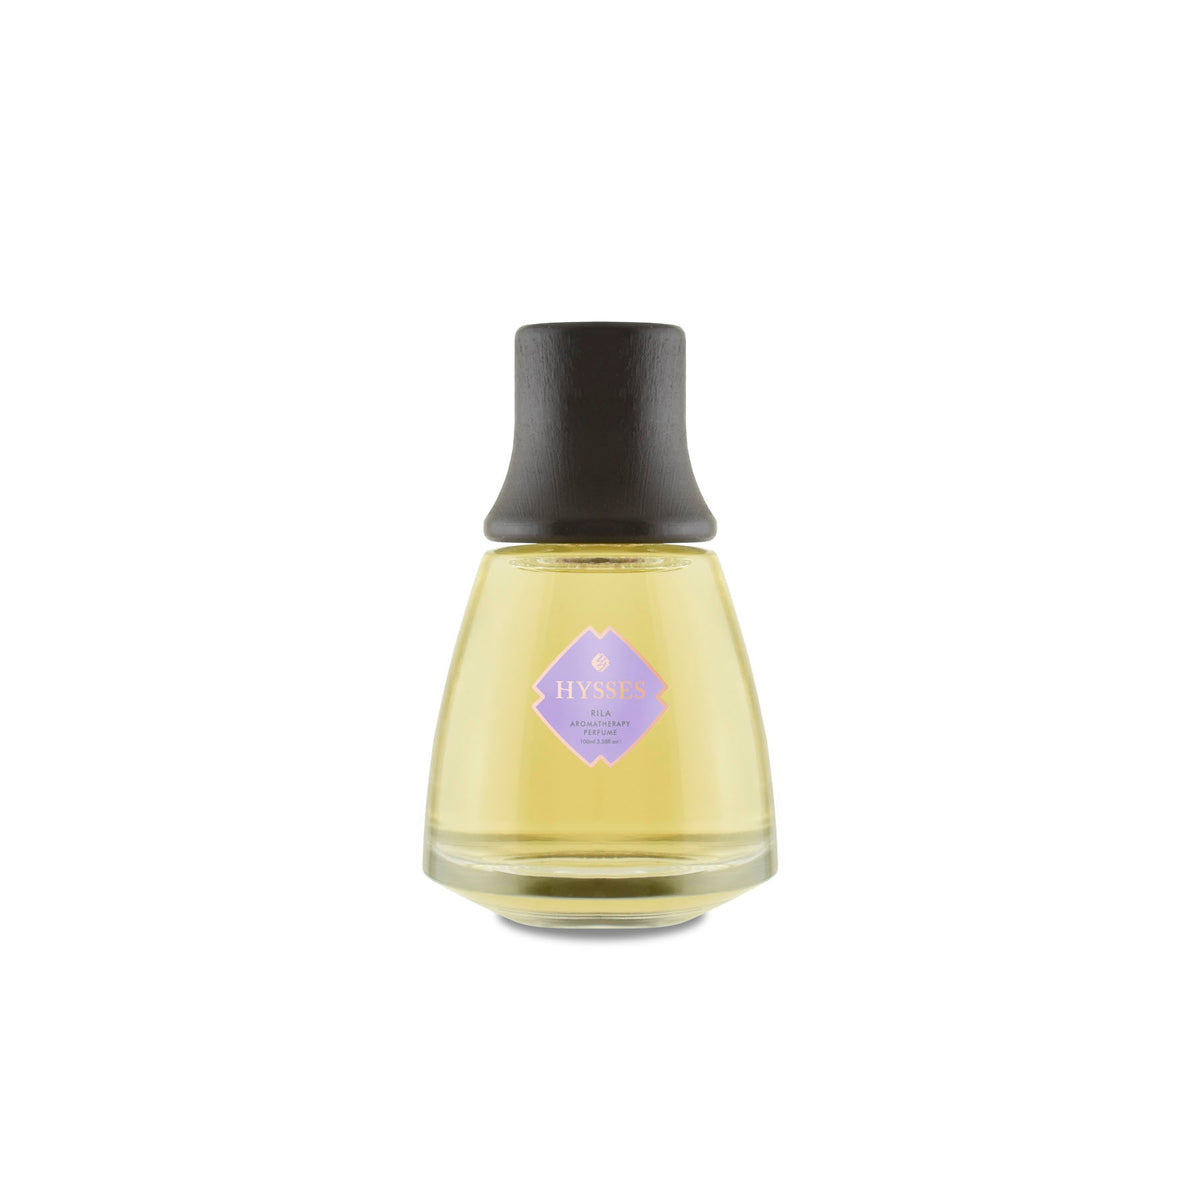 Aromatherapy Perfume, Rila RS87